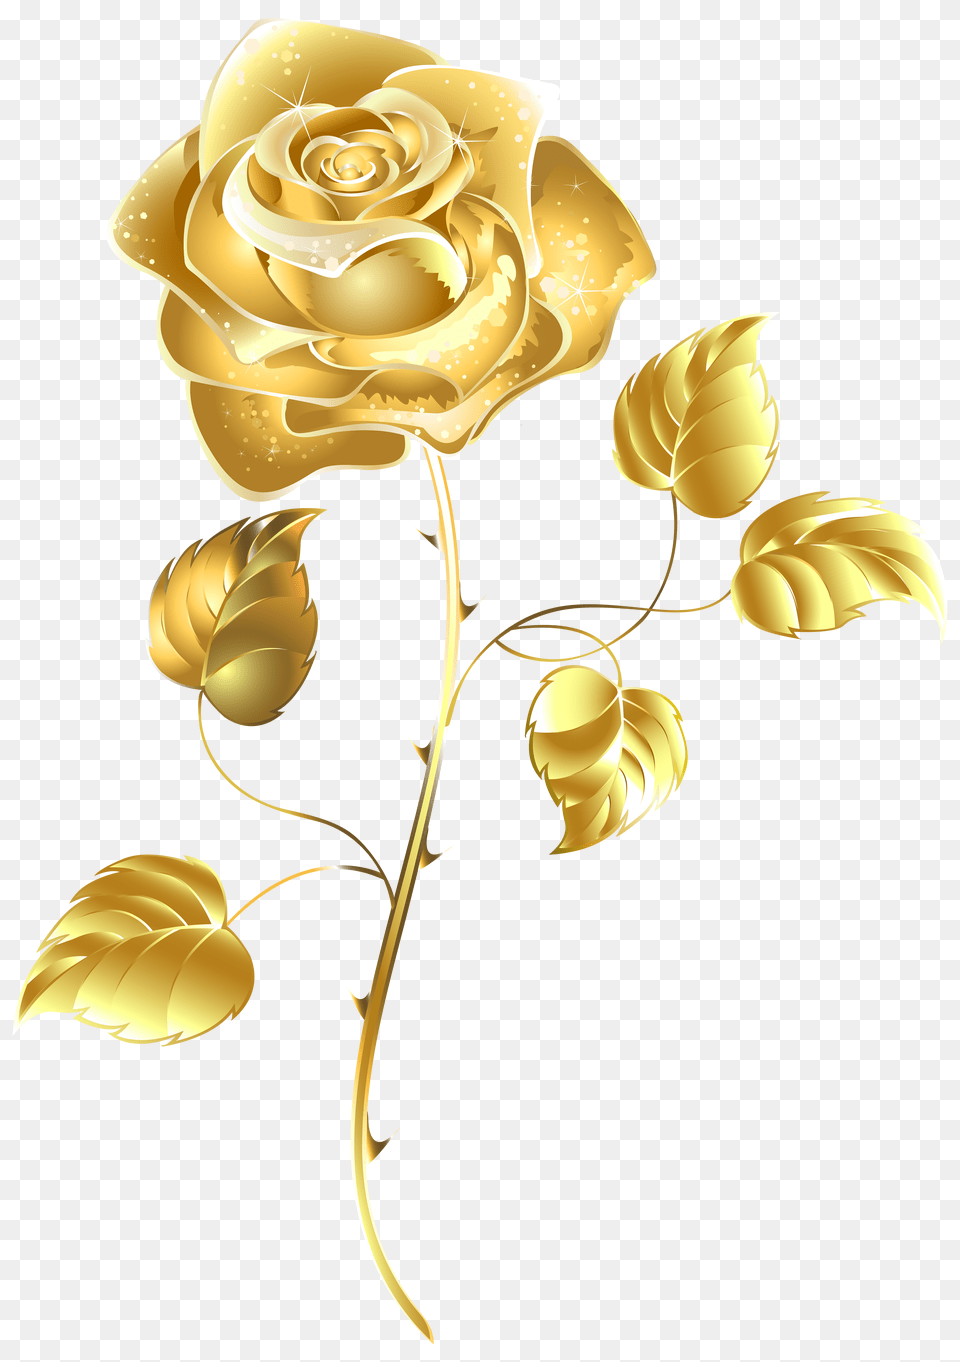 Golden Rose Transparent Transparent Background Gold Flower Png Image